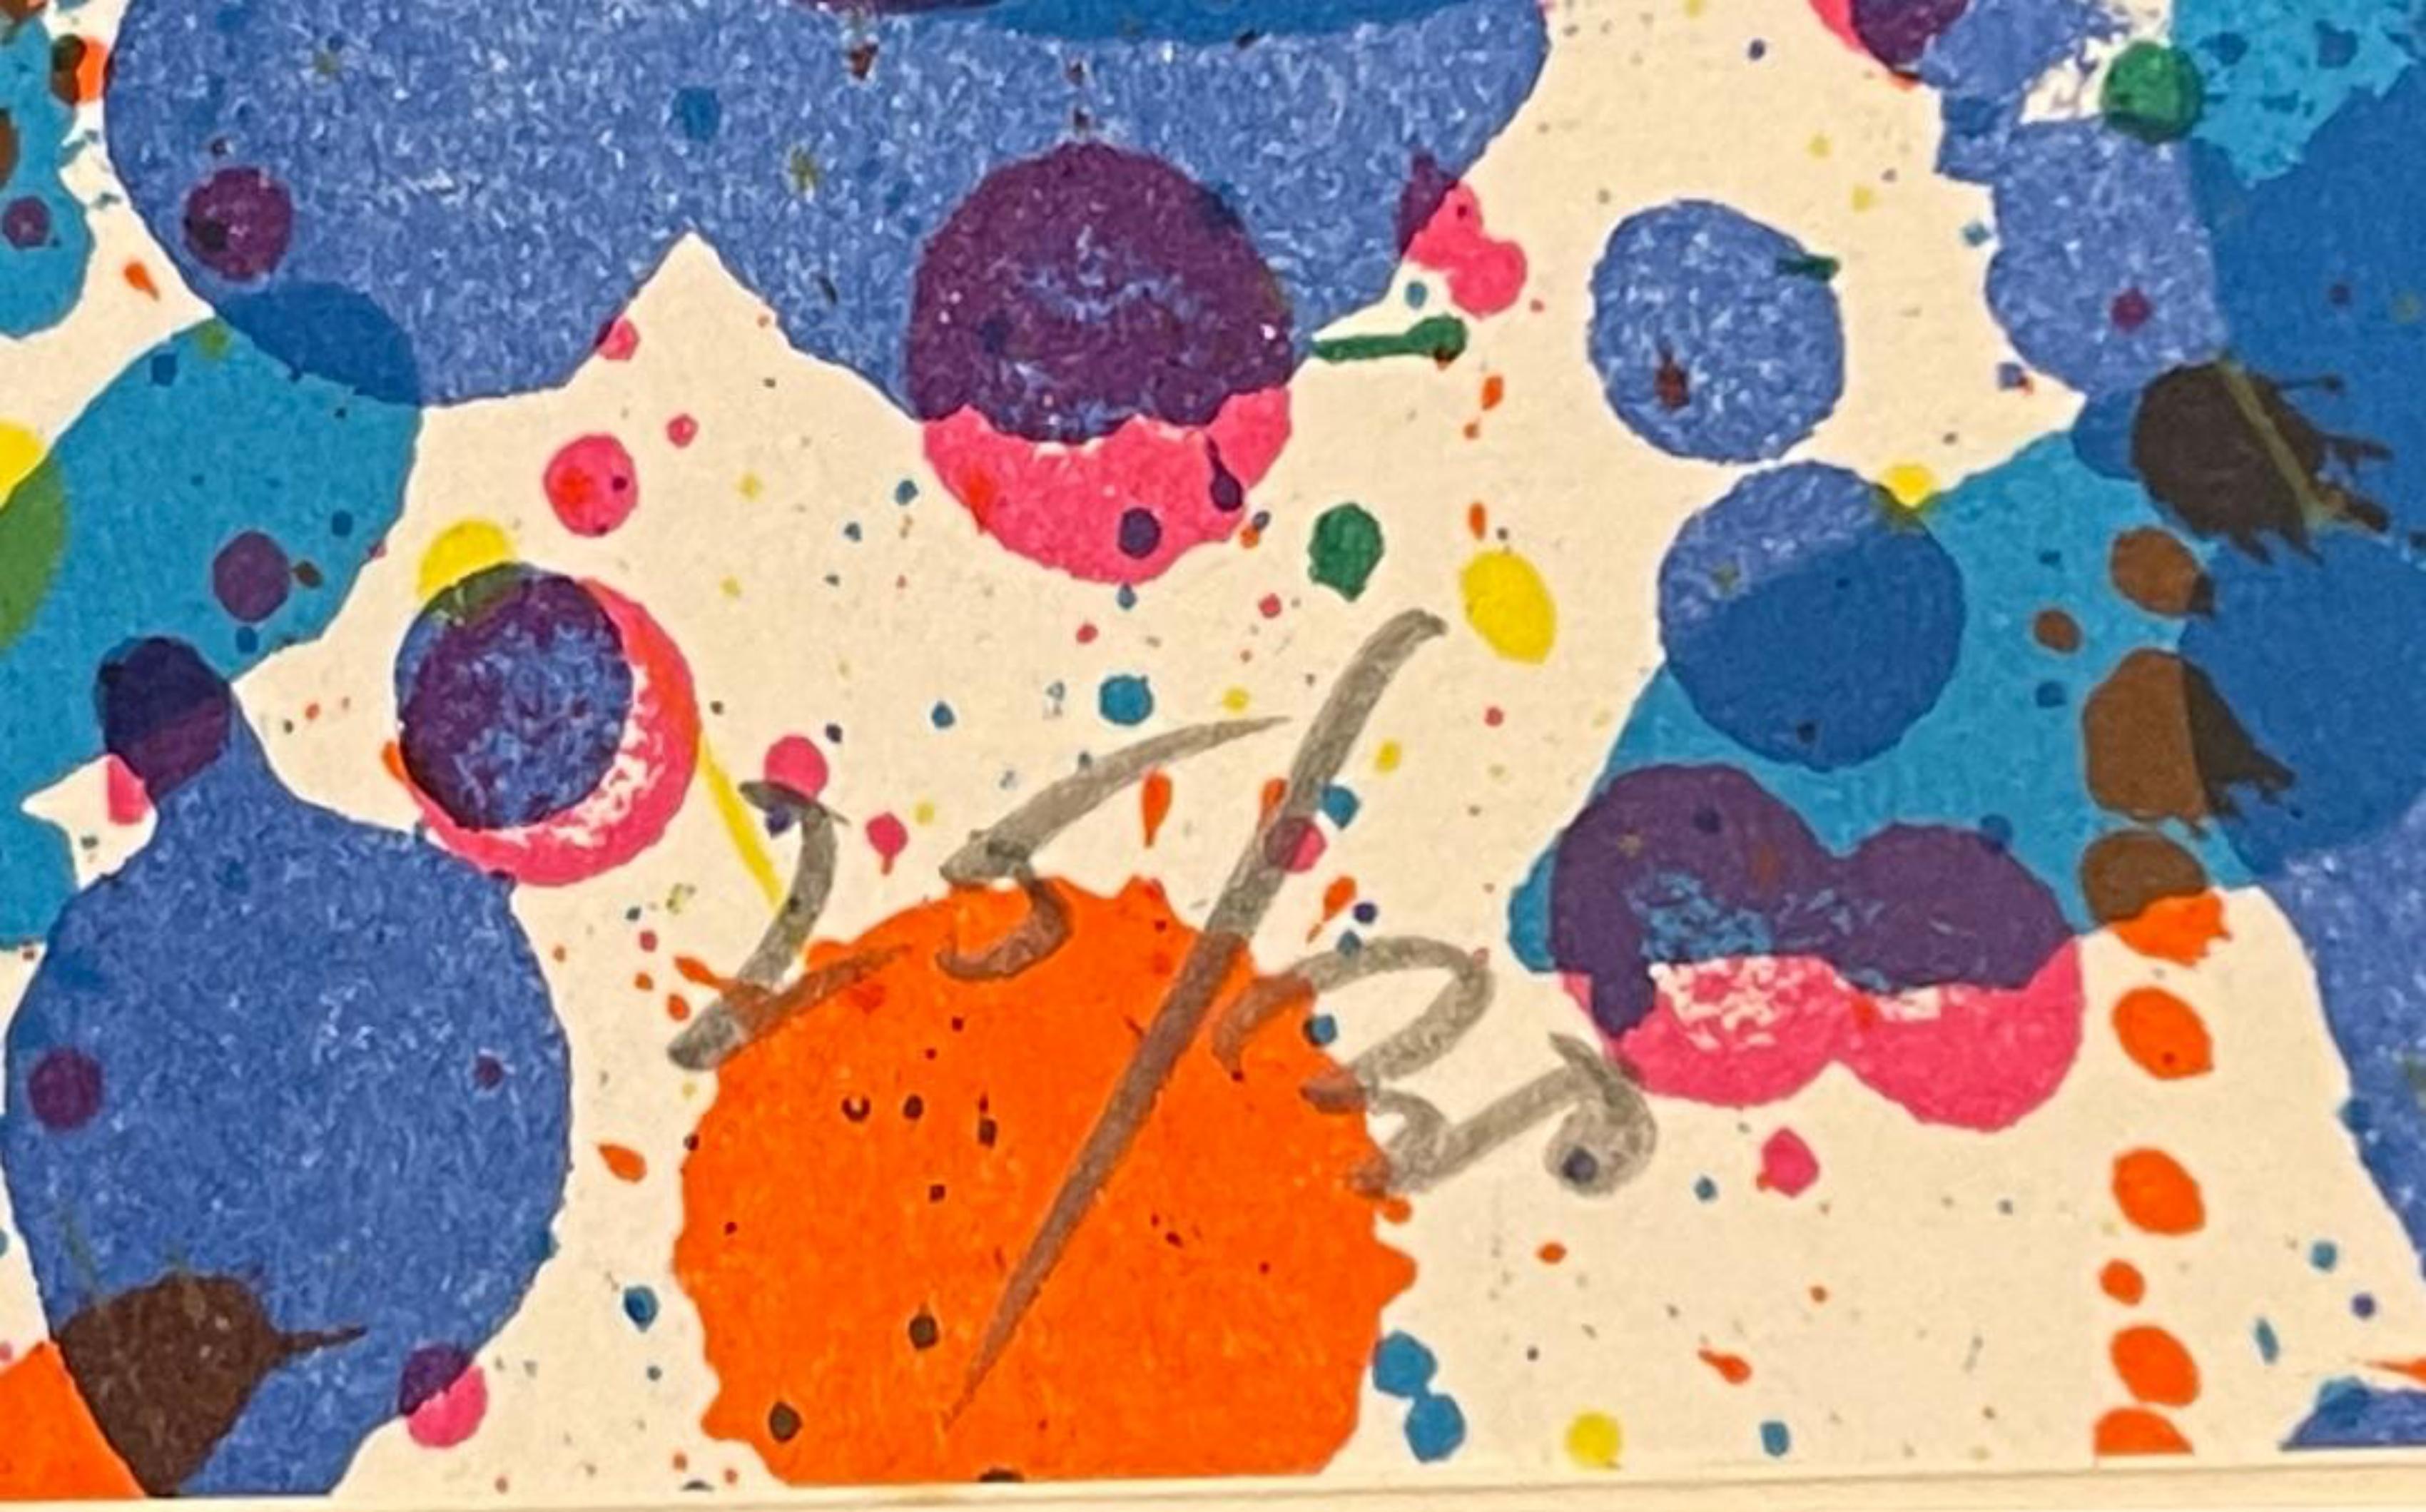 Sam Francis
Lithographie expressionniste abstraite sans titre (signée à la main à partir de l'édition de luxe du musée Carnegie), 1972
Catalogue raisonné : 155, Lembark 
15 × 22 pouces
Signé à la main et numéroté 25/30 au recto.
Imprimeur : Maeght,